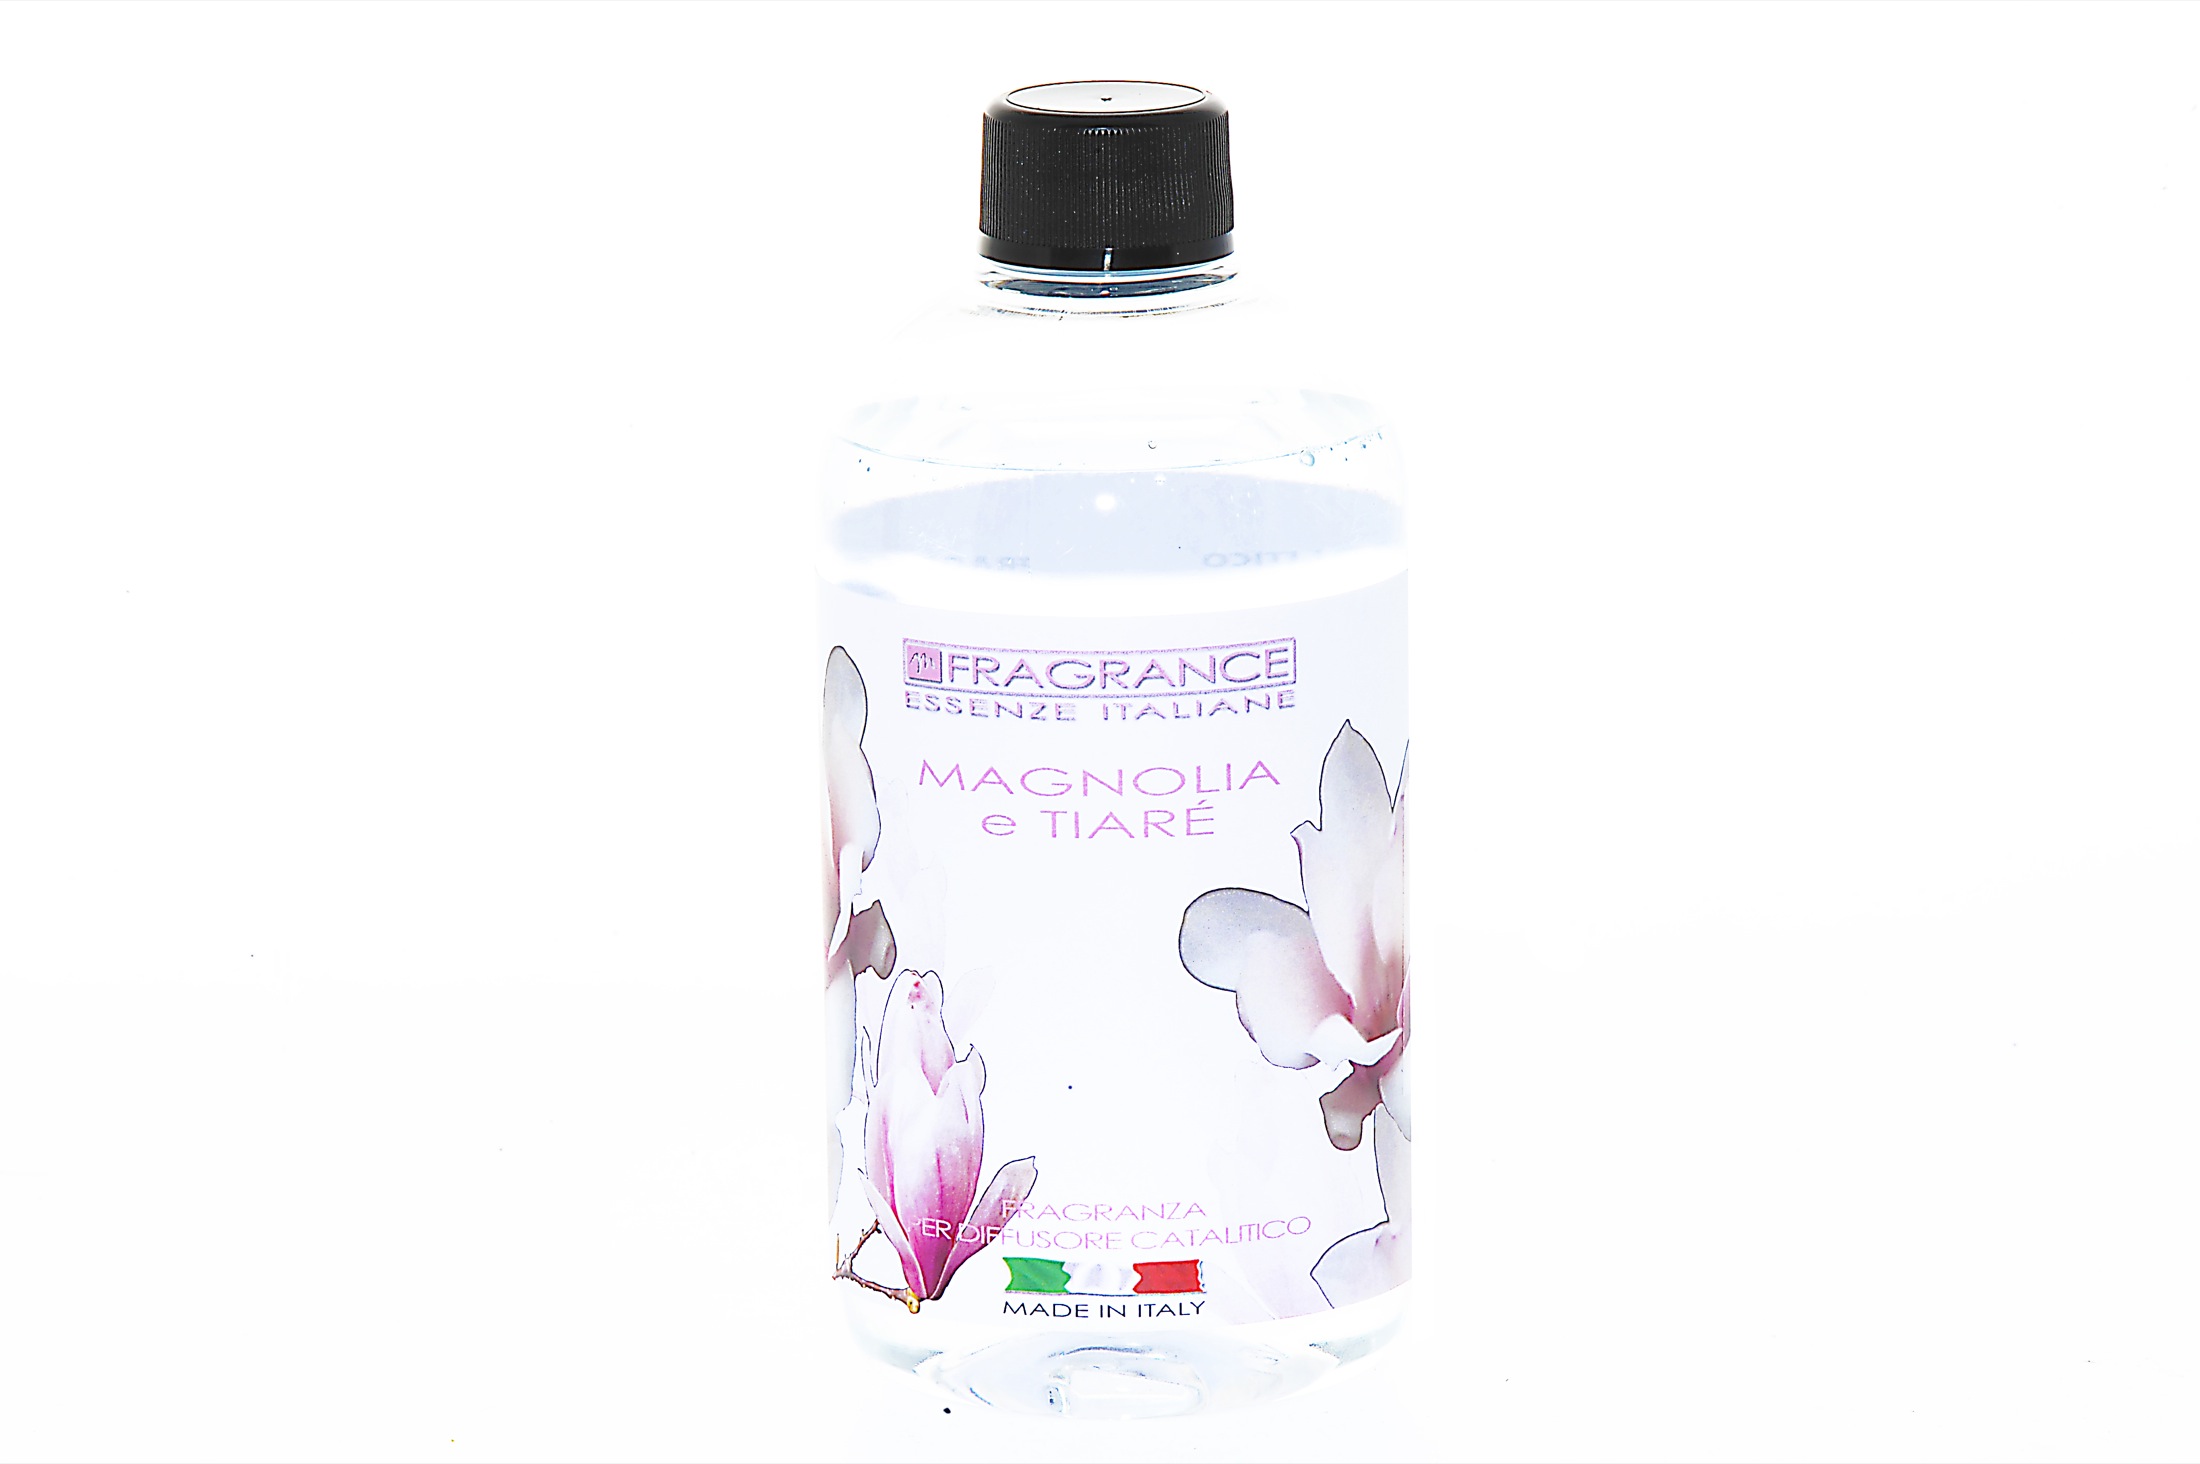 Fragranza magnolia -tiarre  per diffusore 0,5 l